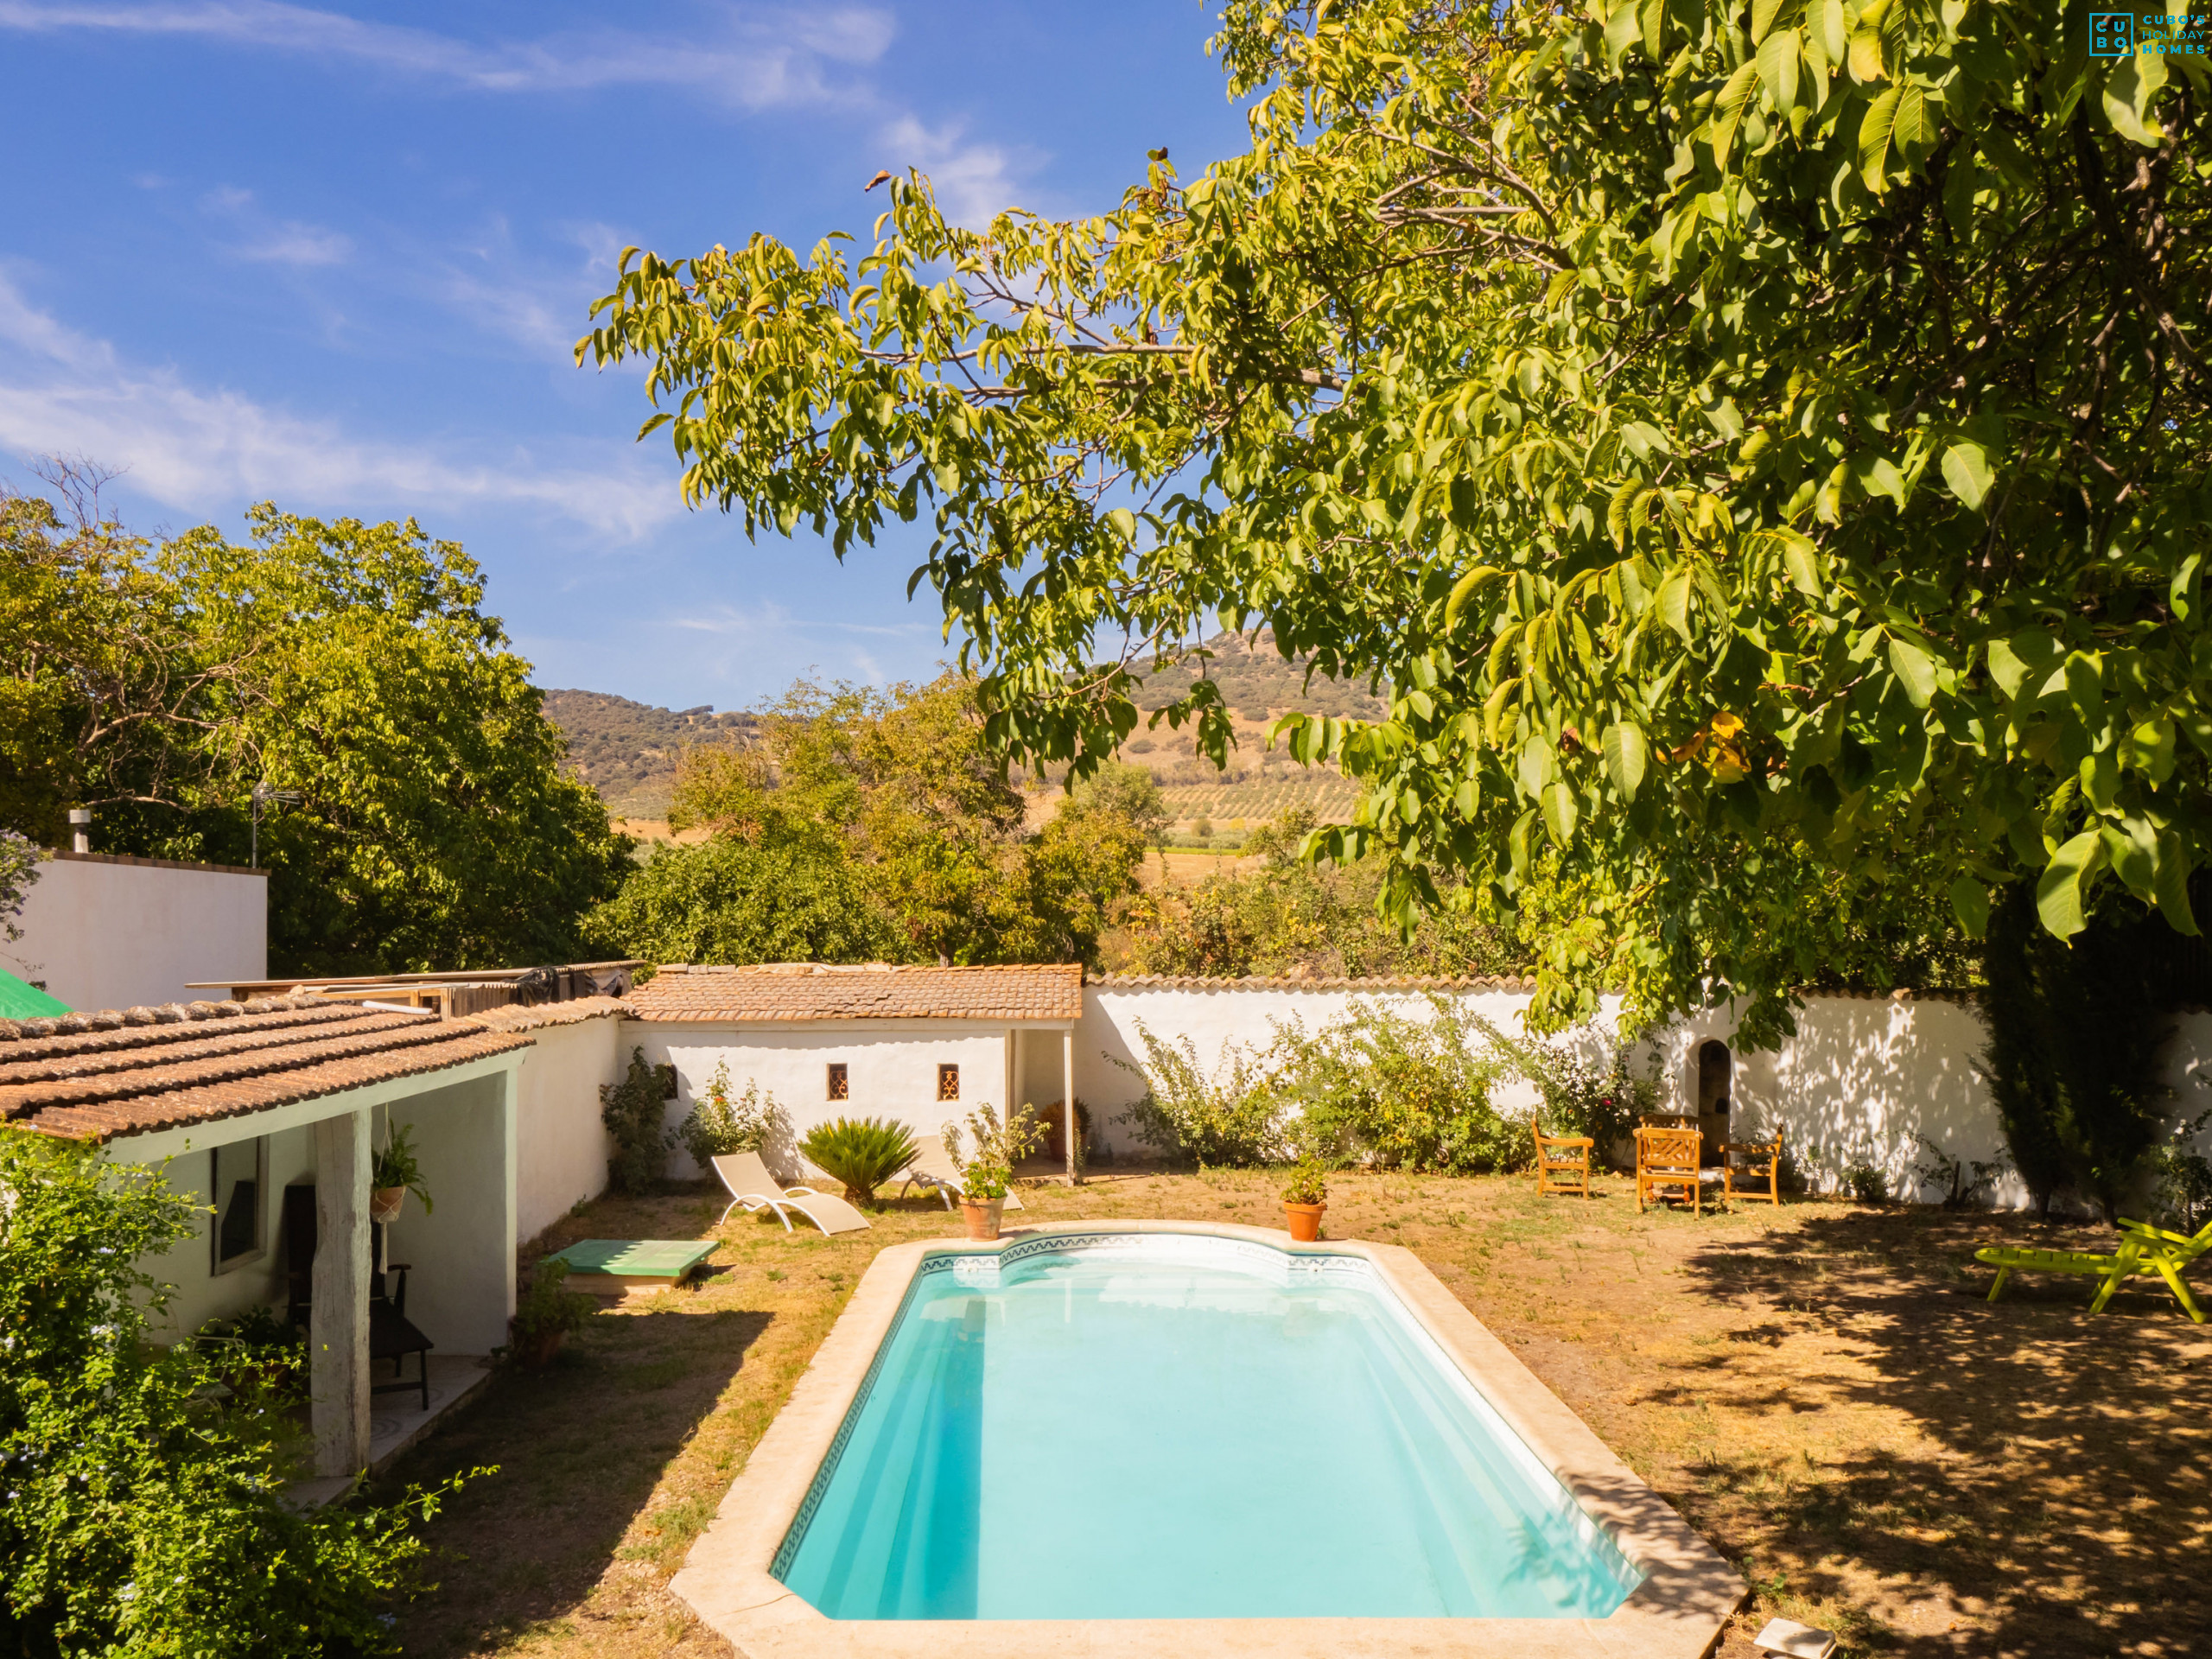 Casa rural con piscina privada cerca de Ronda para 11 personas.